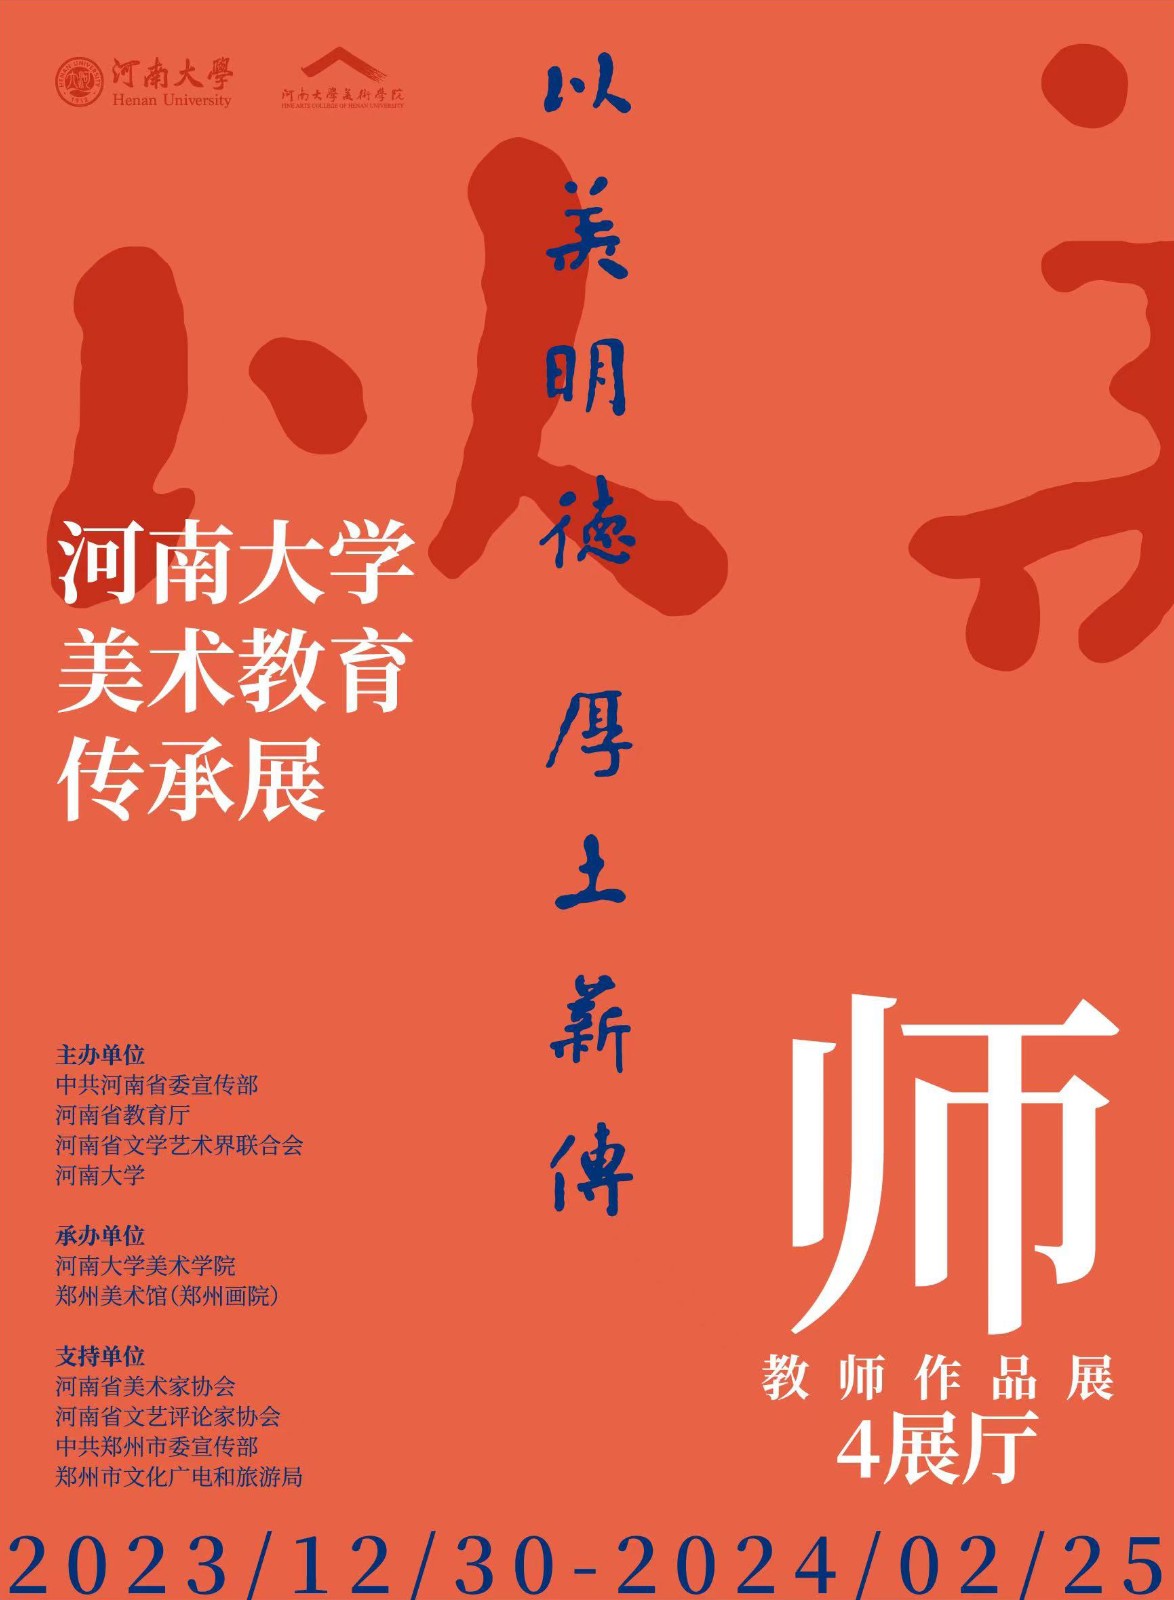 河南大学海报 第一张.jpg